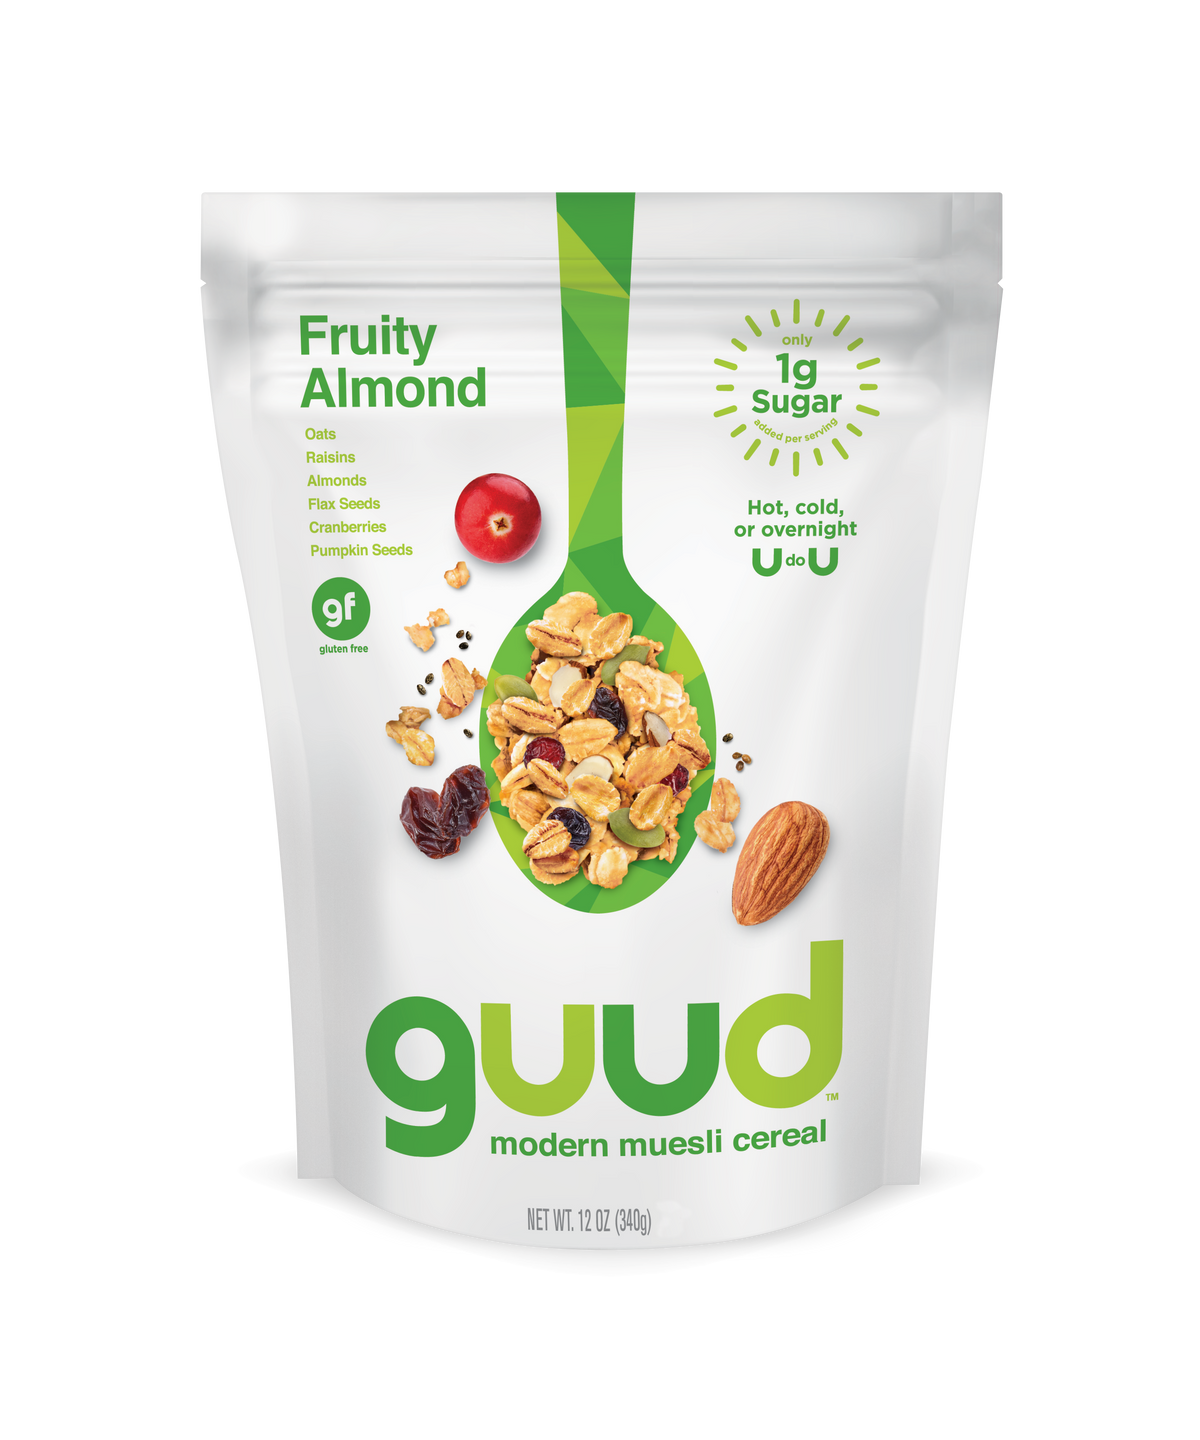 Fruity Almond Gluten Free Muesli